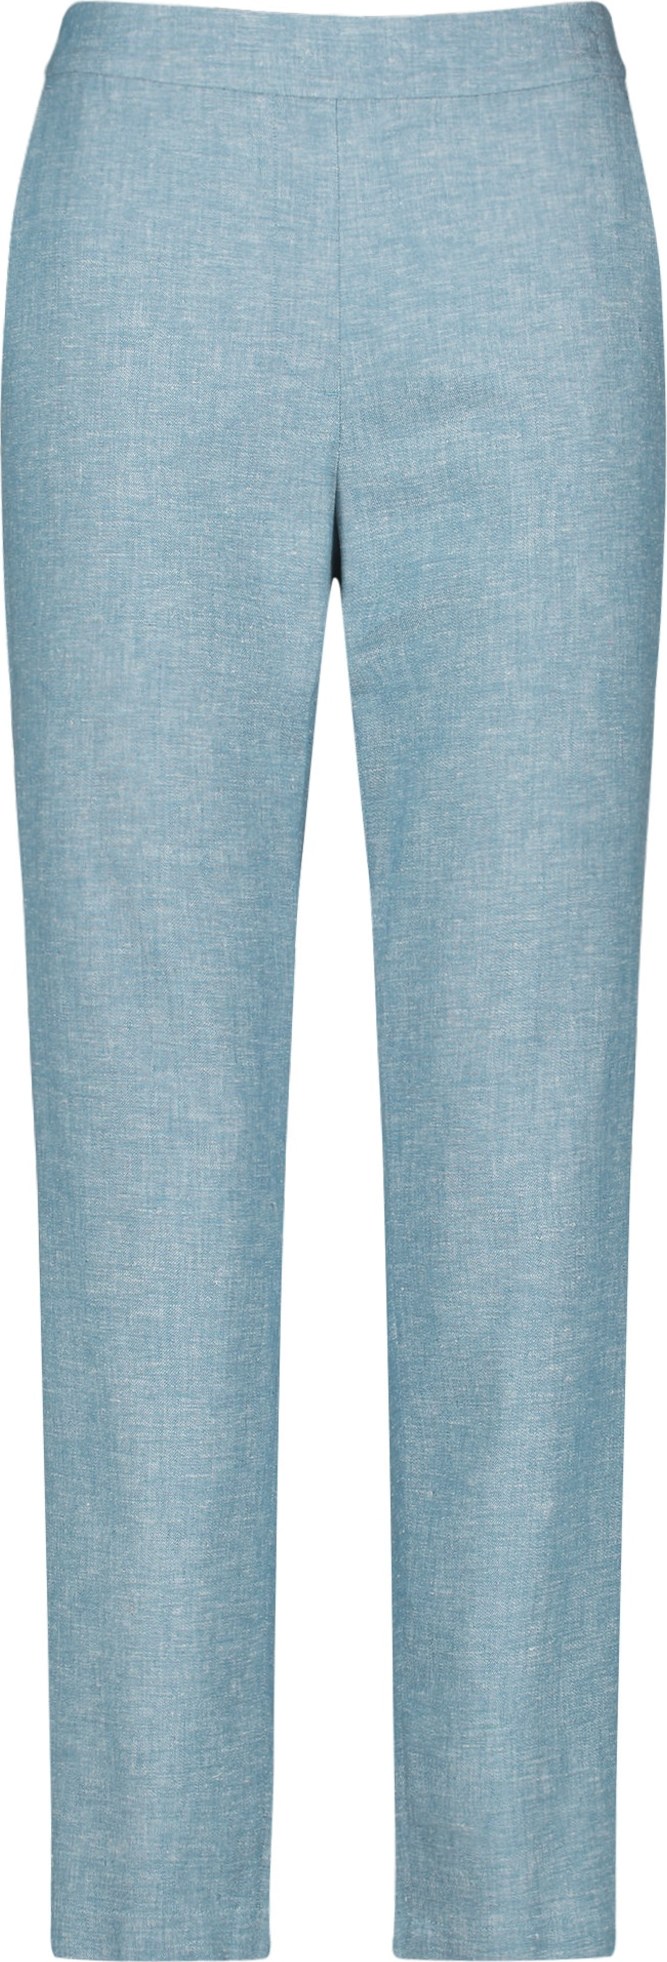 TAIFUN Chino kalhoty modrý melír